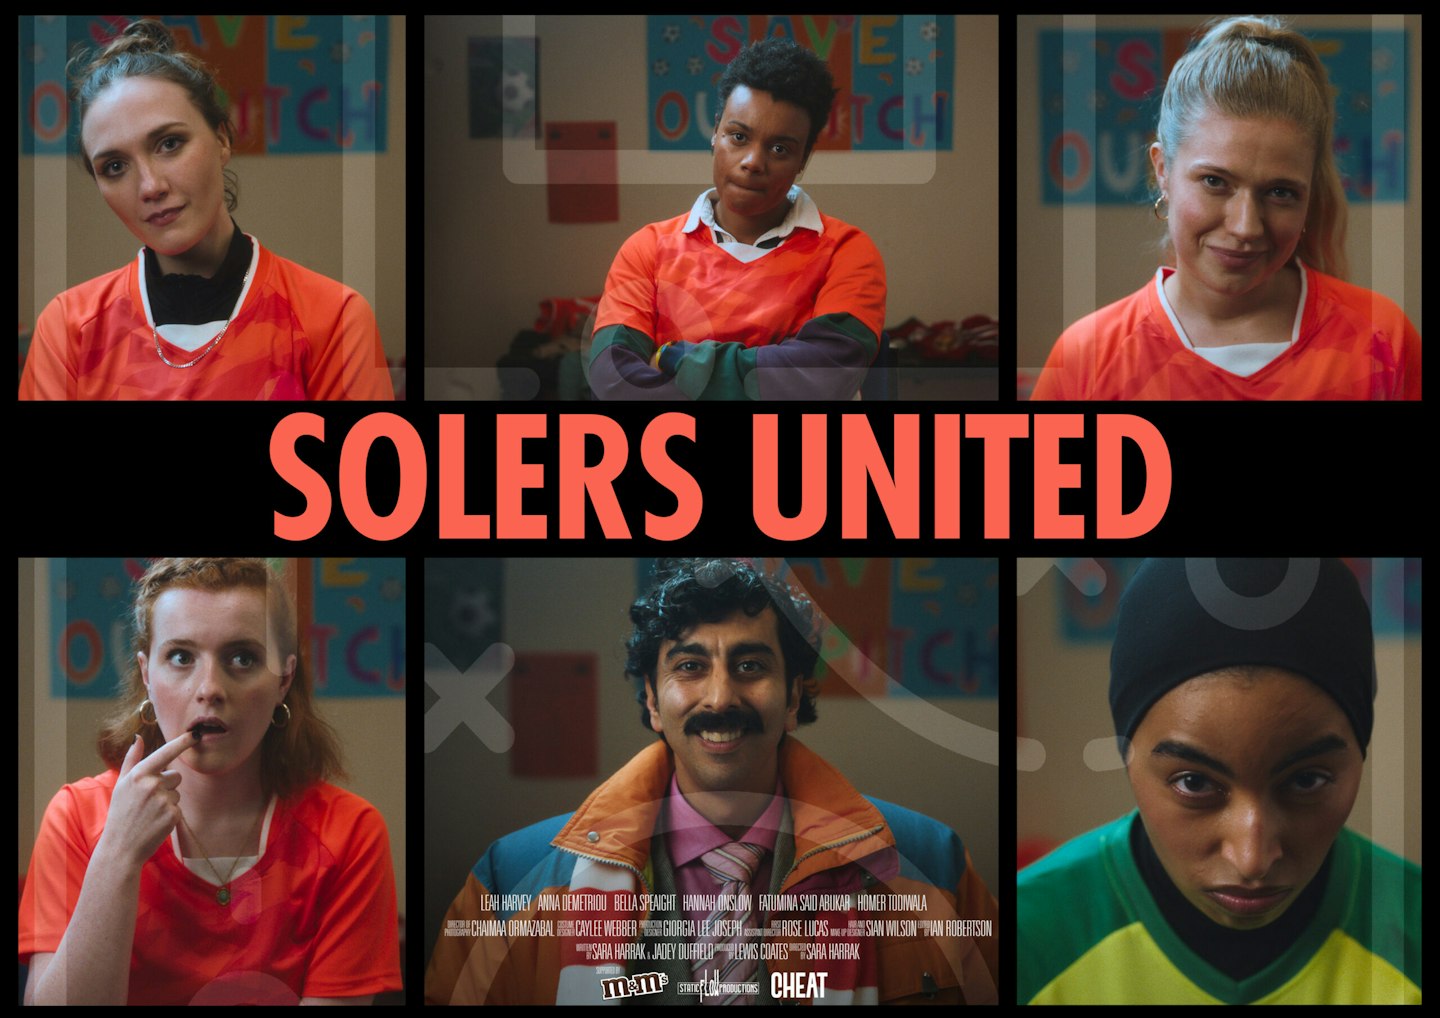 Solers United – M&M'S